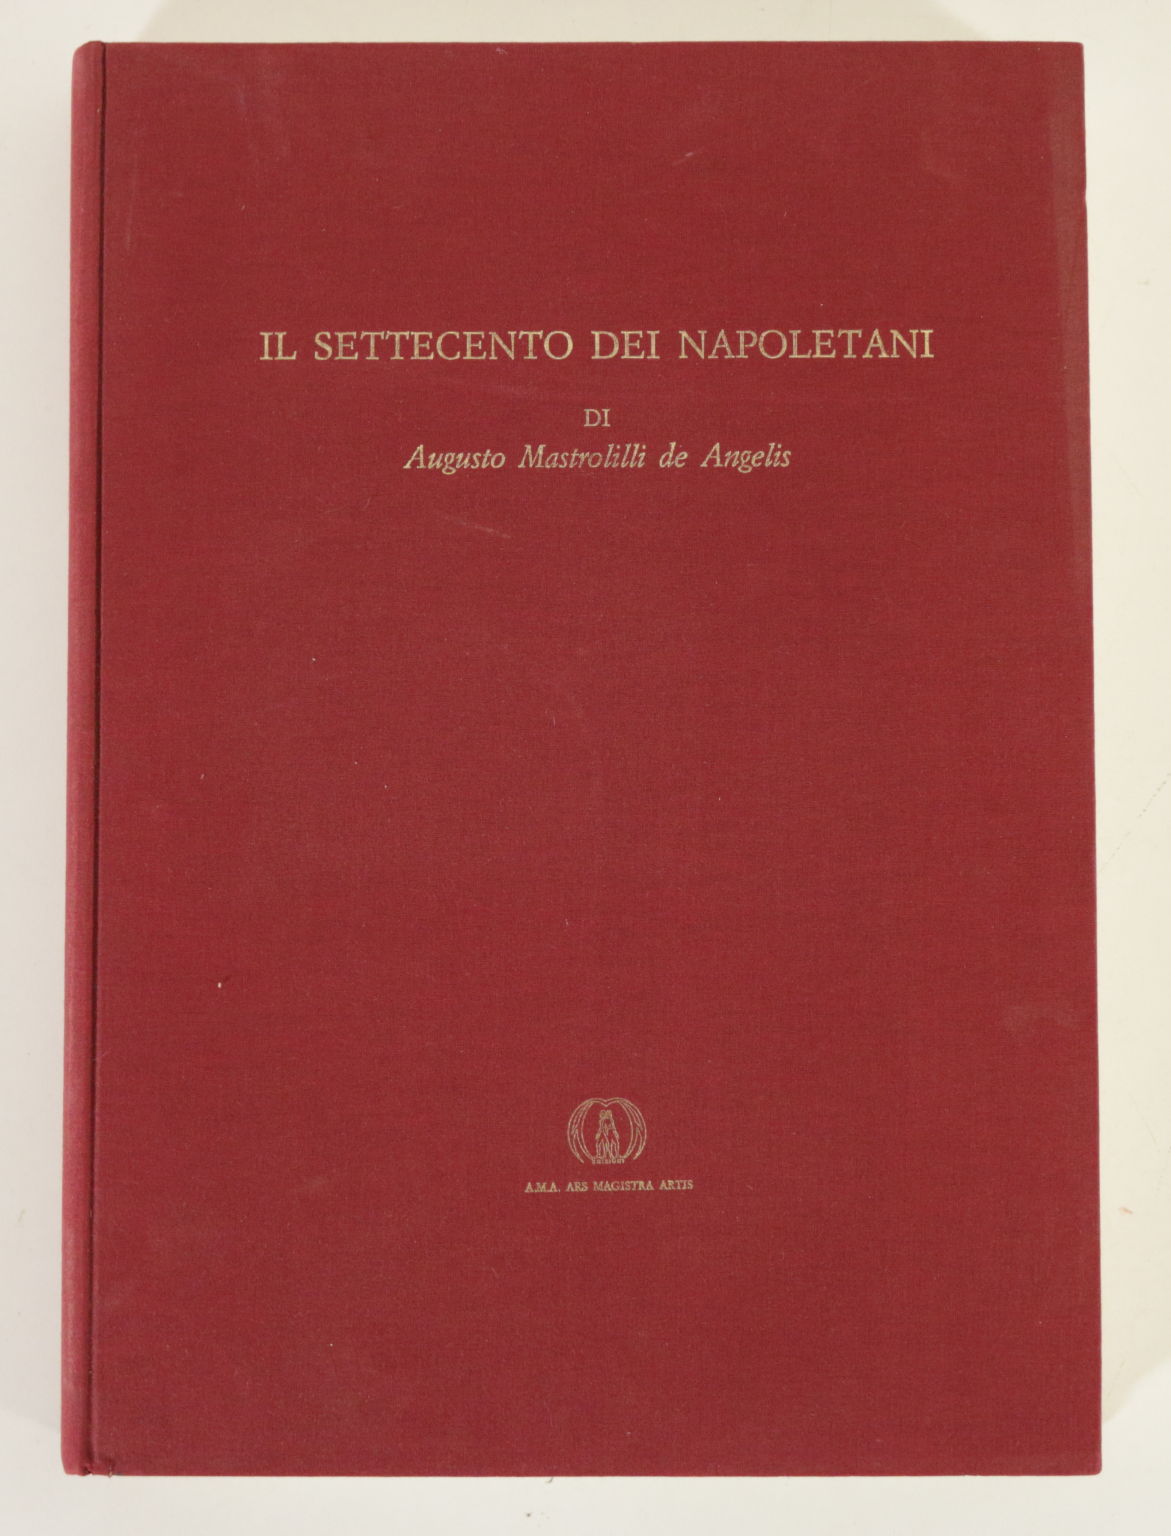 El siglo XVIII de los napolitanos por Augusto Mastrolill, Angelo Calabrese